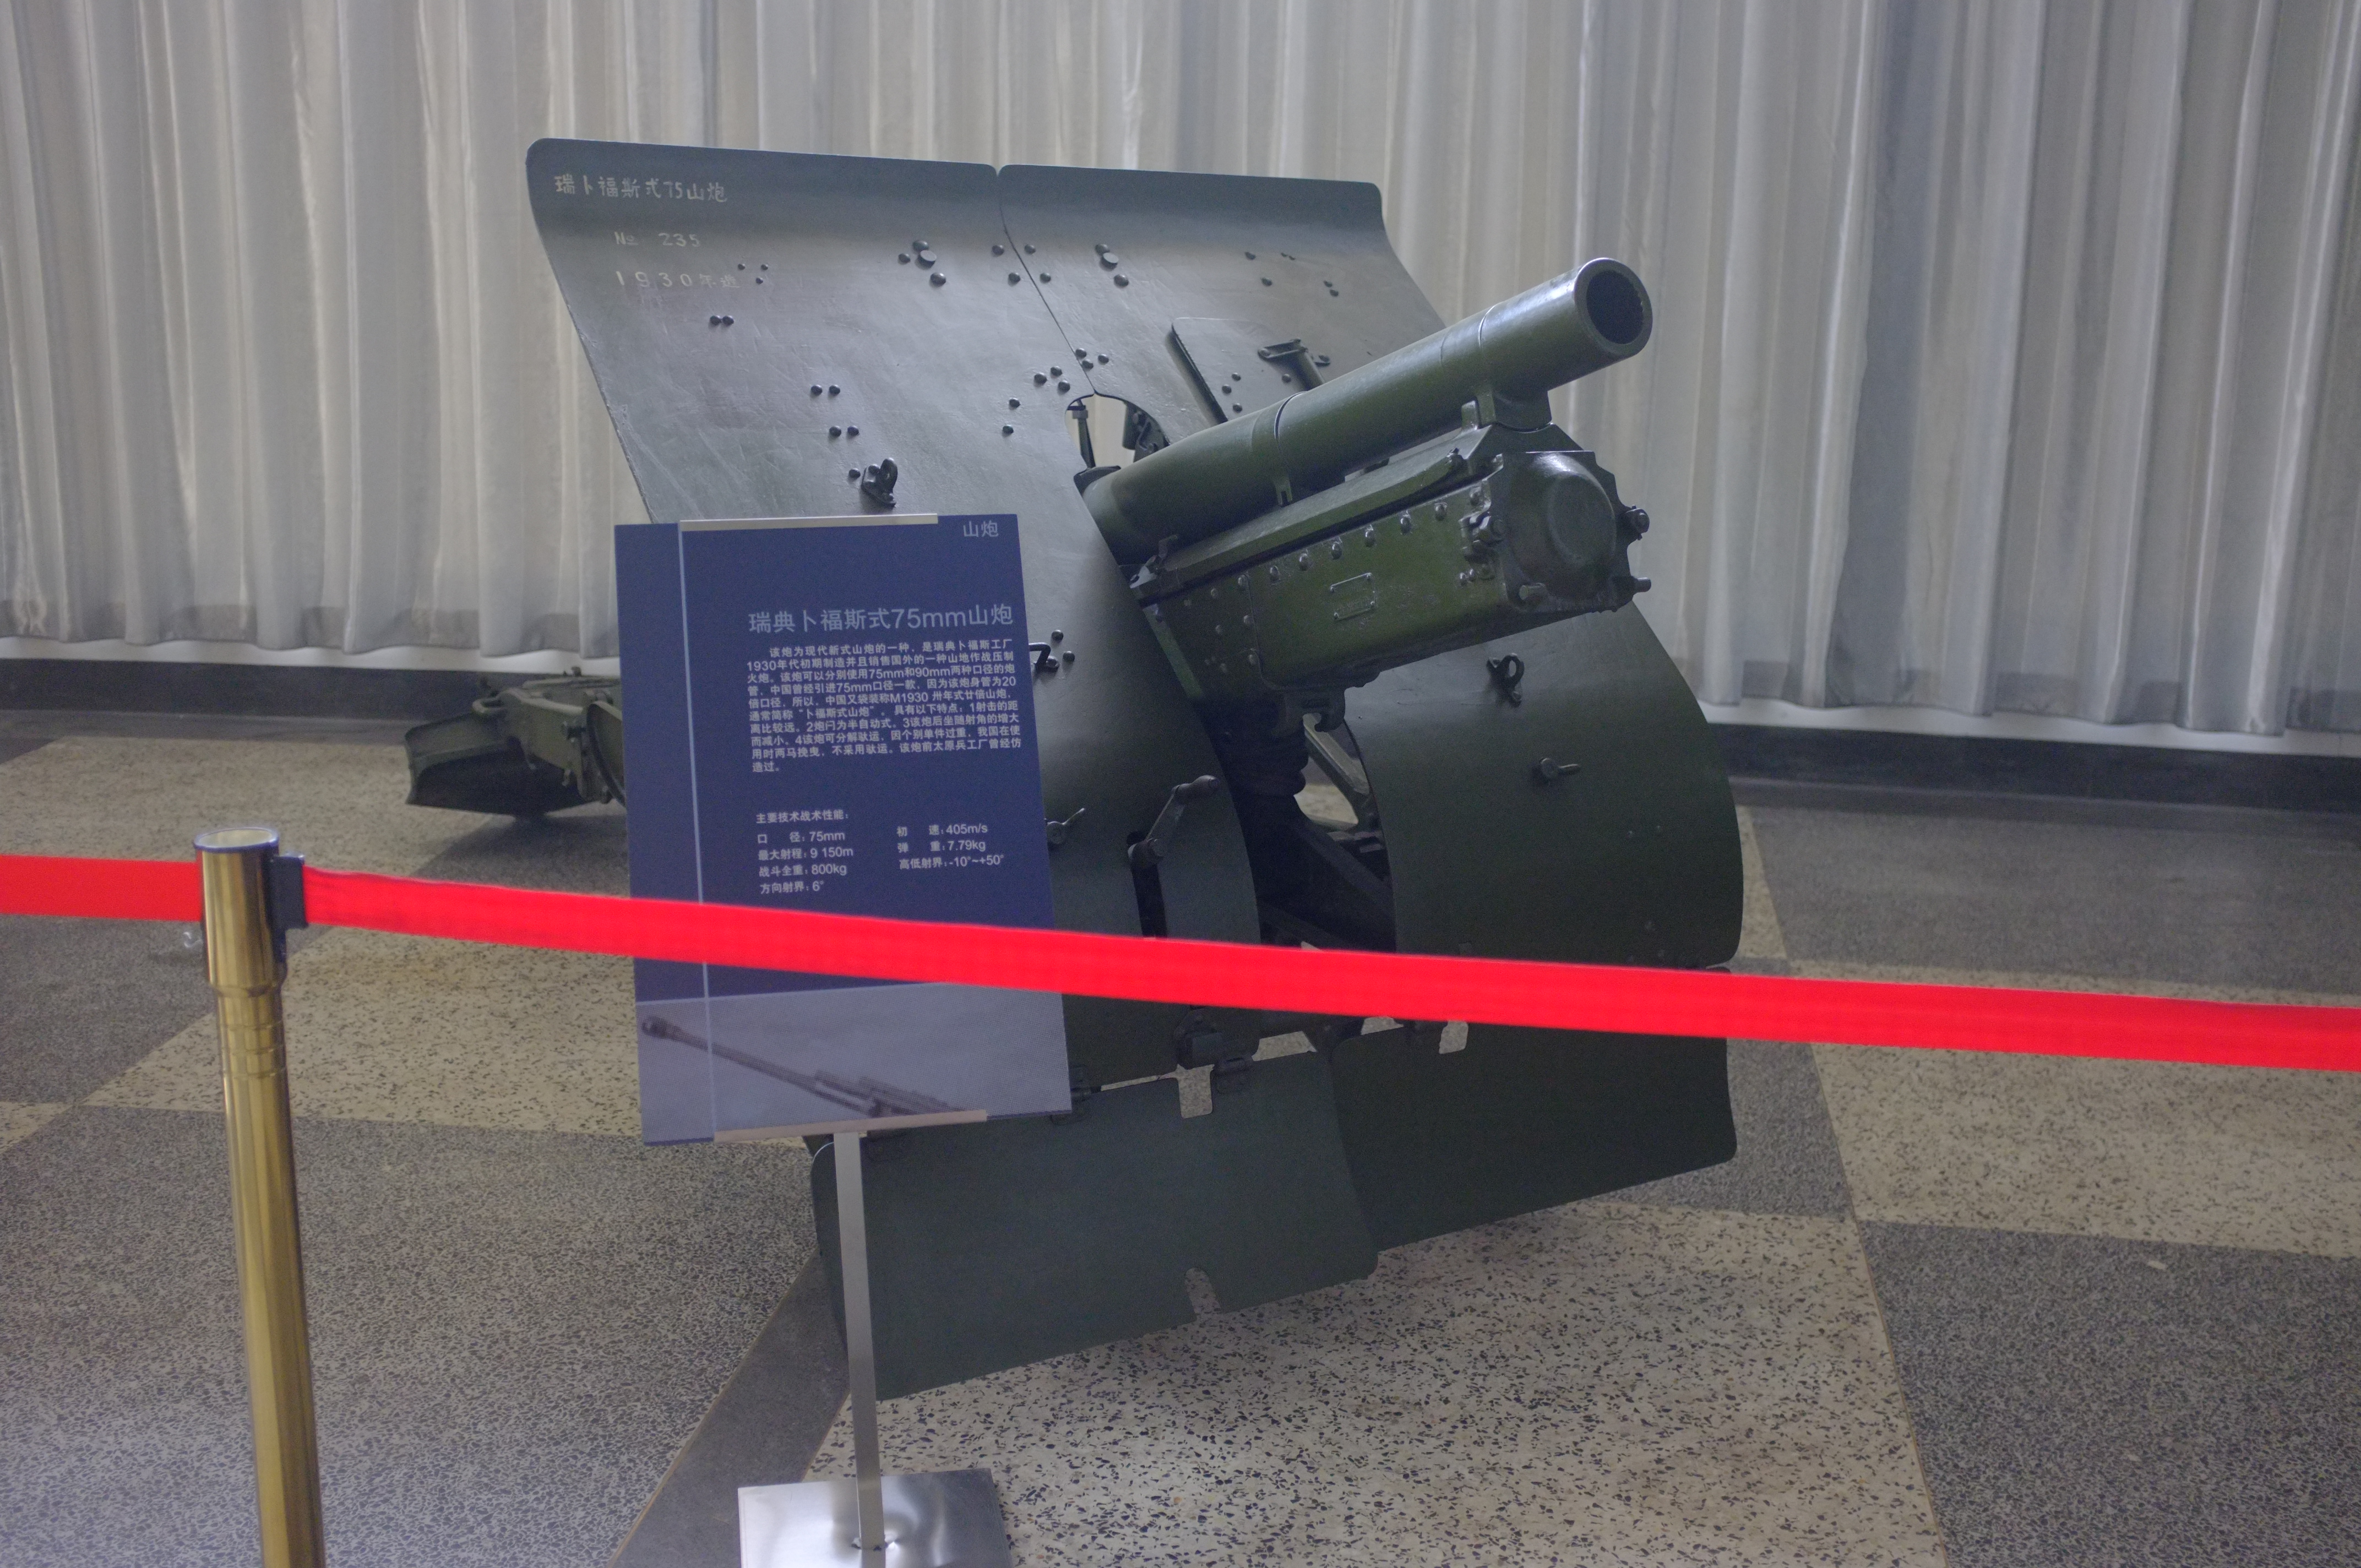 瑞典博福斯75毫米口径山炮,由瑞典知名军工厂博福斯制造